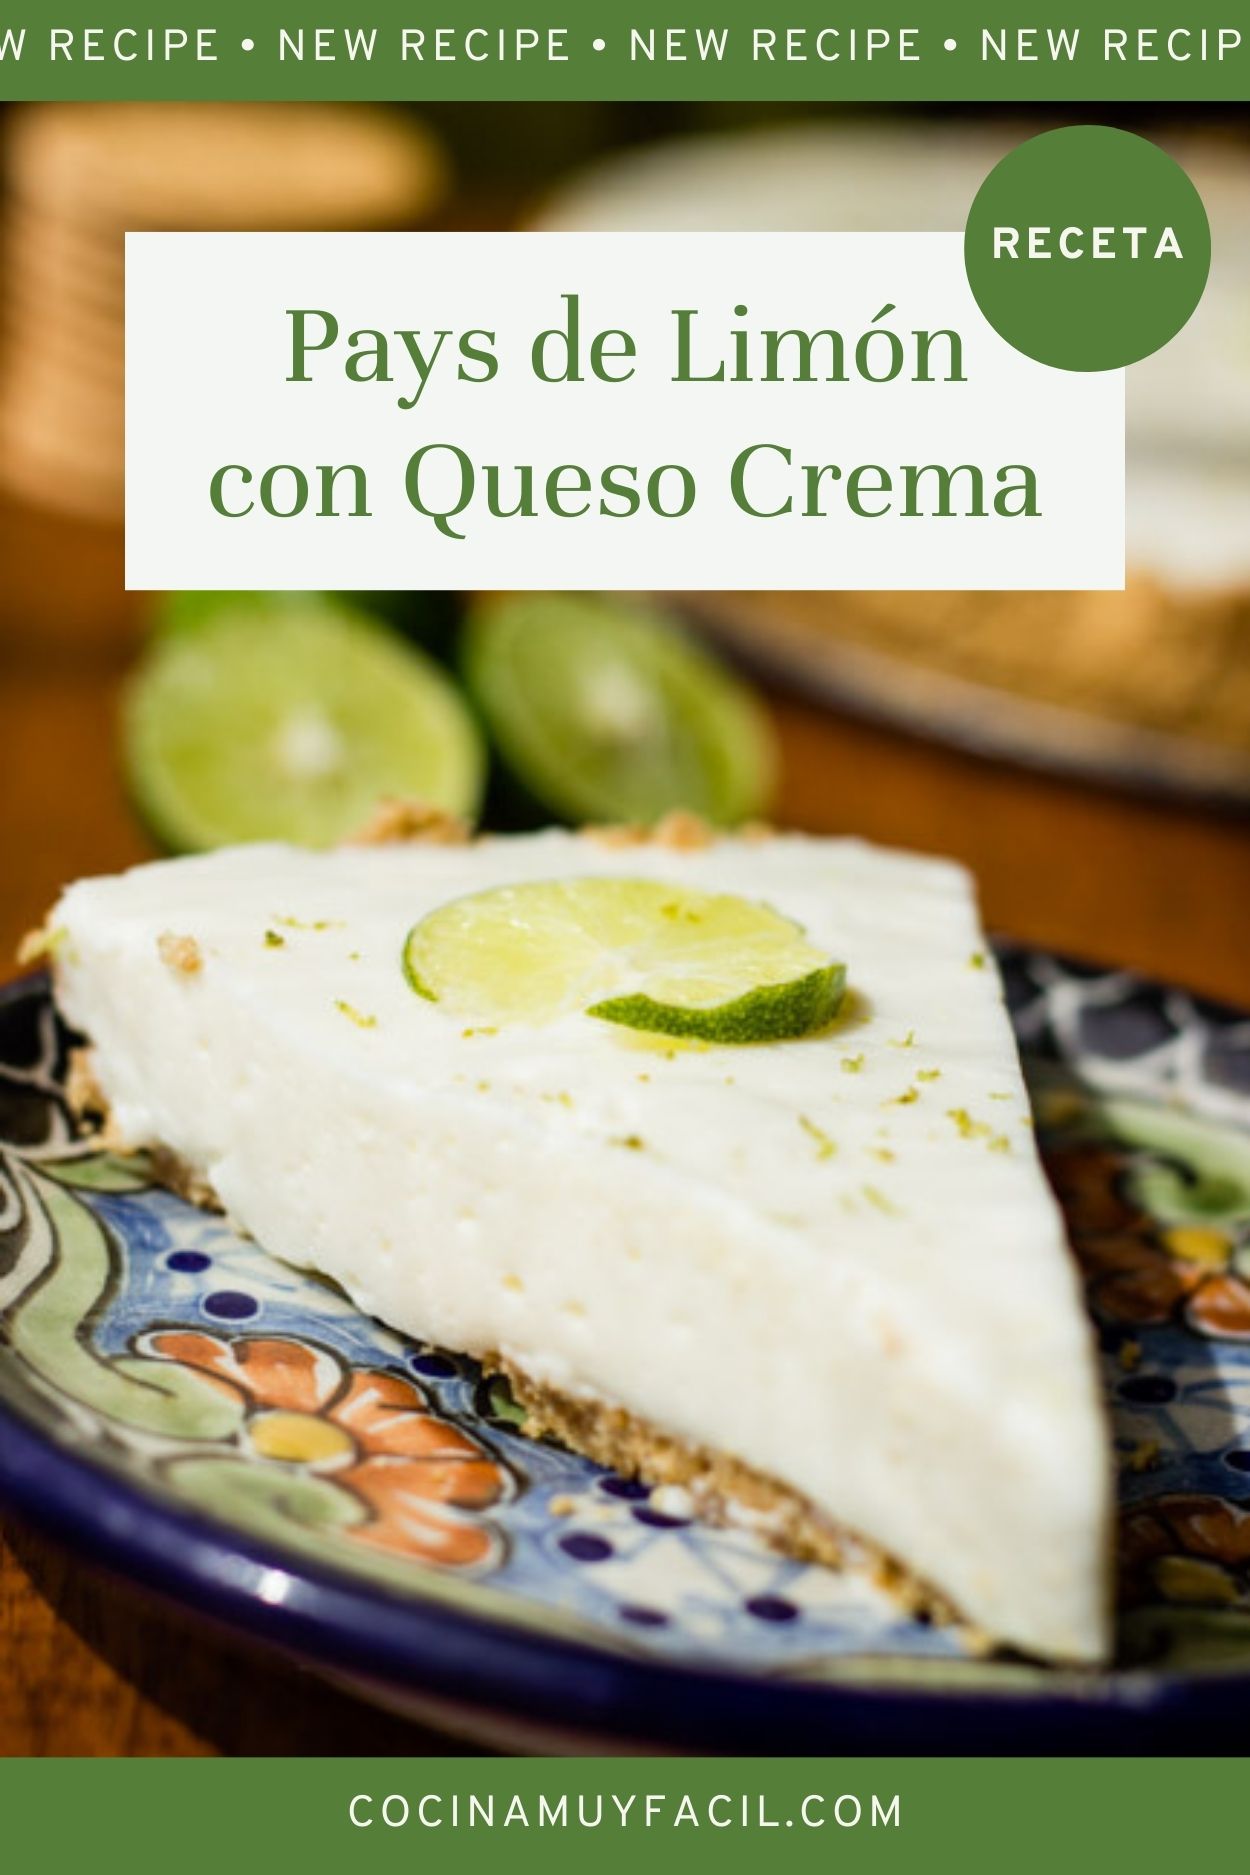 Pay de limón con queso crema. Receta | cocinamuyfacil.com